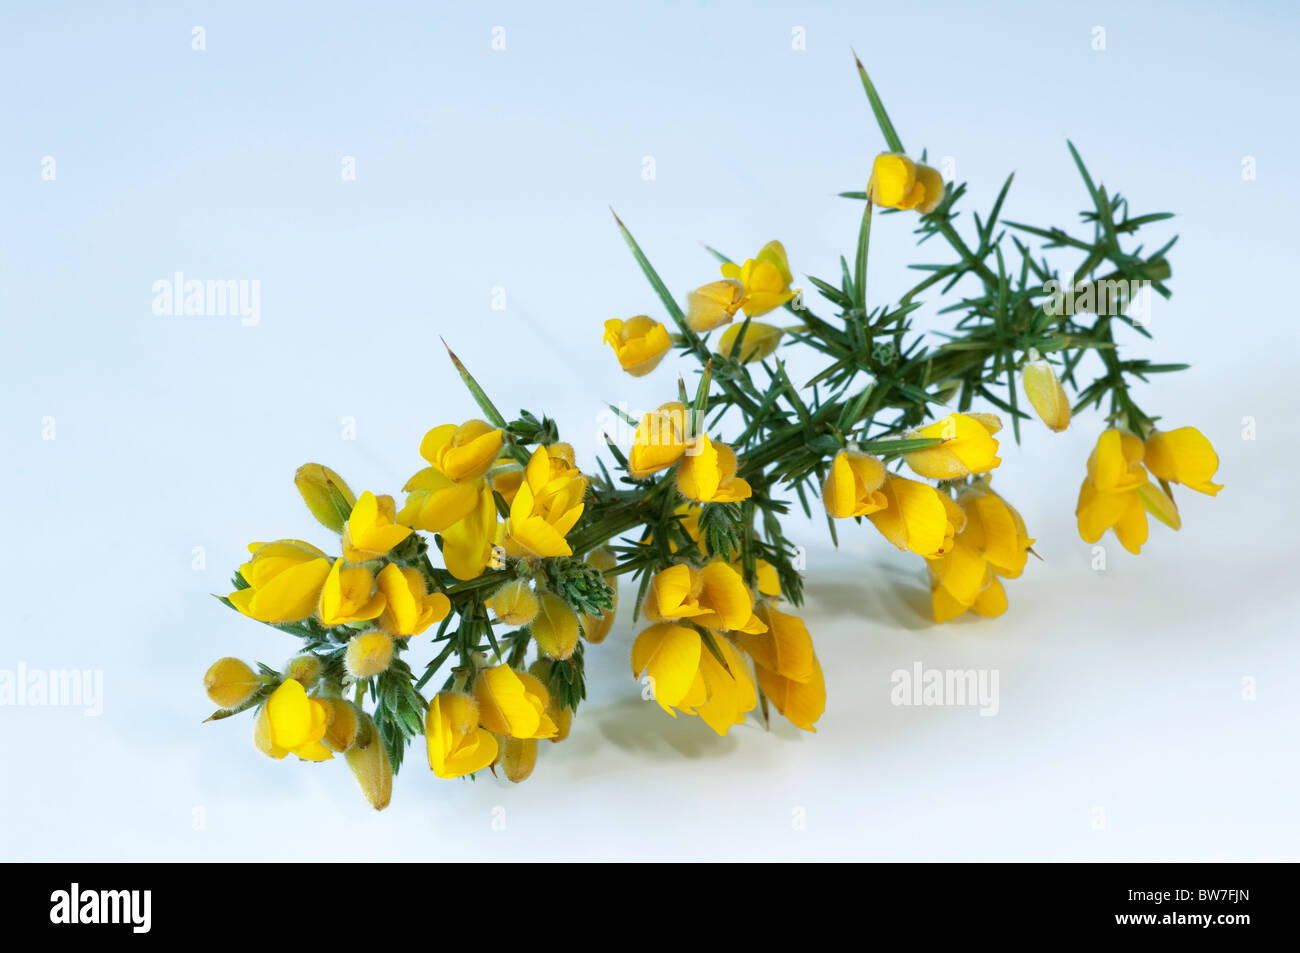 Furze ajoncs commun, (Ulex europaeus), rameau en fleurs. Banque D'Images